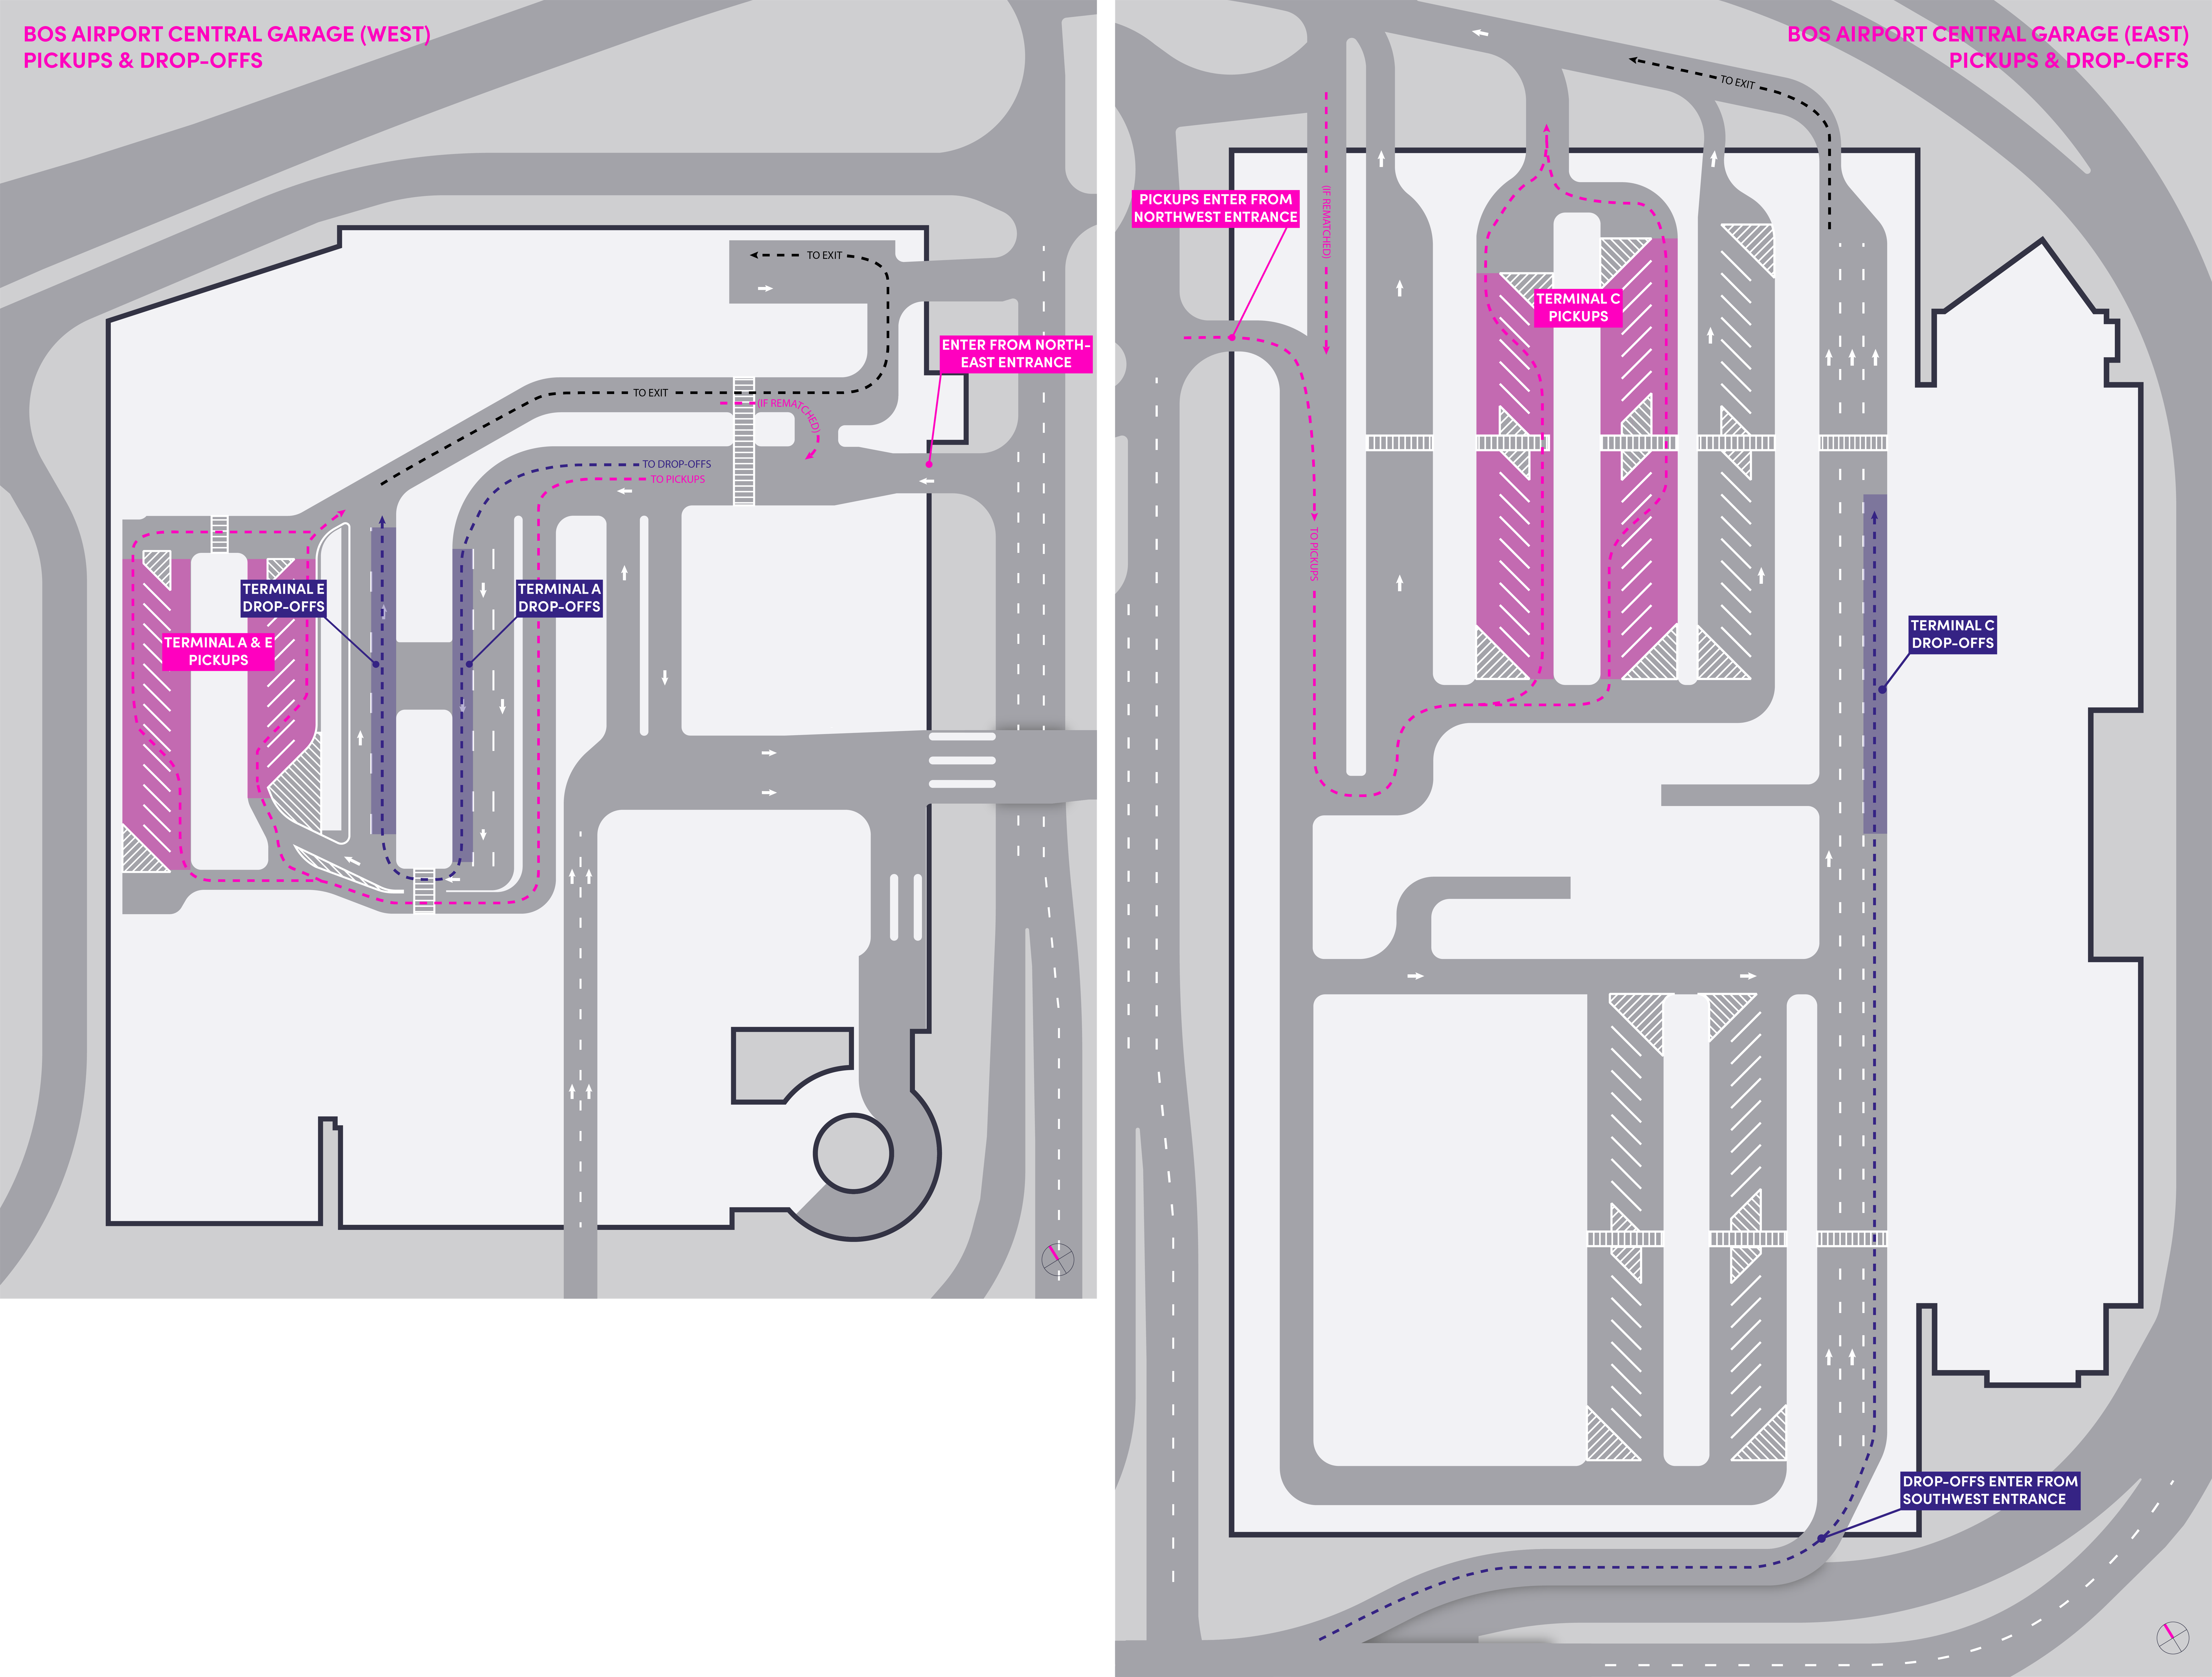 Mapa del estacionamiento central (oeste) y central en el Aeropuerto Internacional de Boston Logan